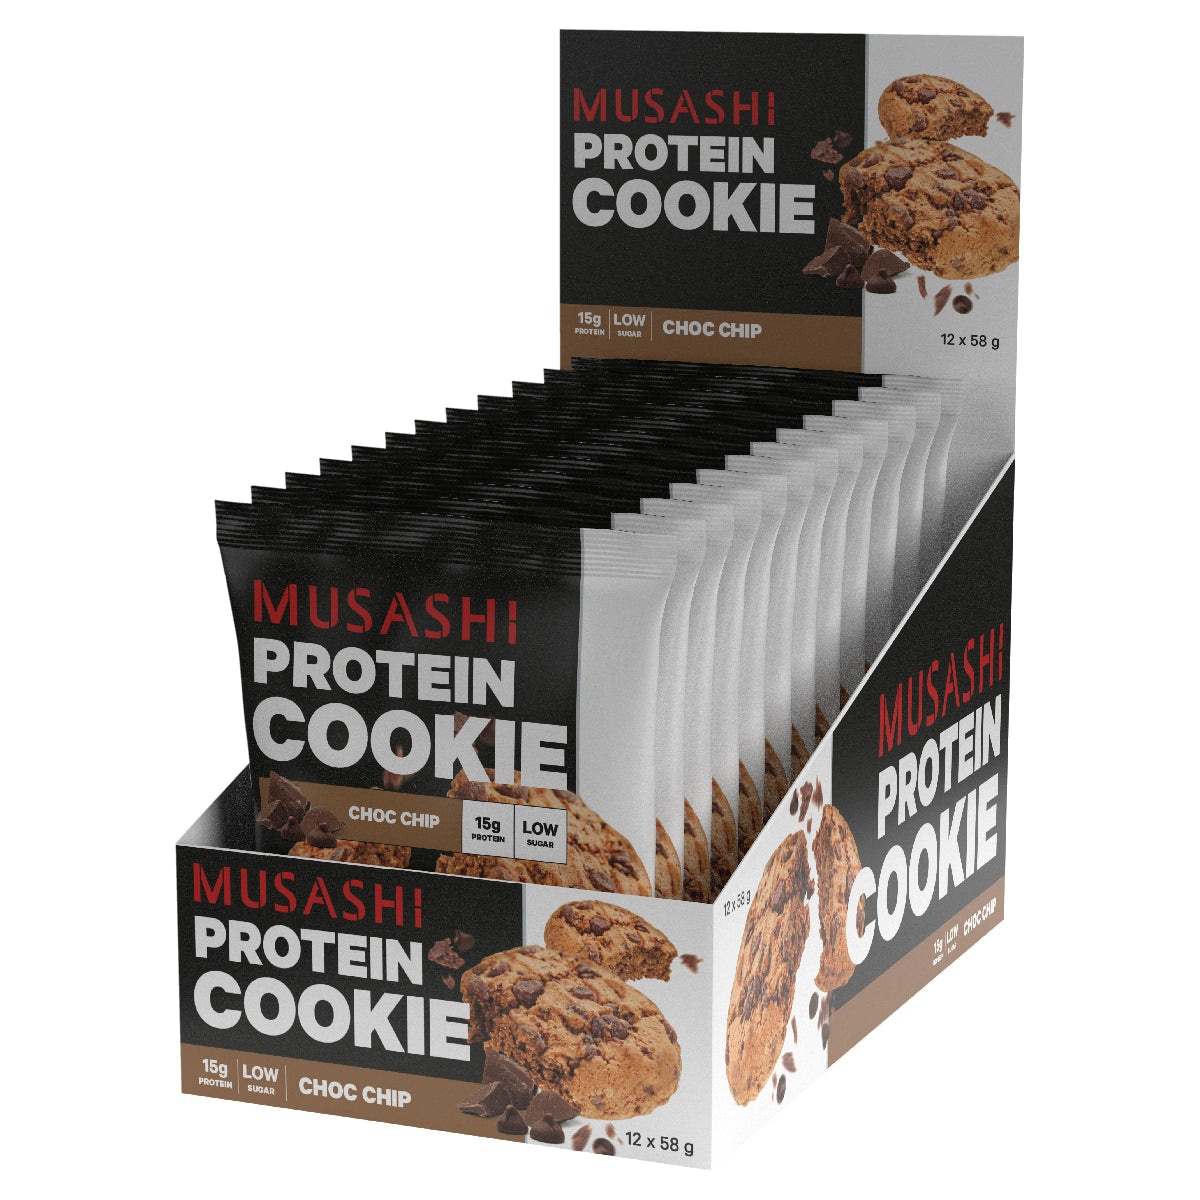 Musashi Choc Chip Protein Cookie 12 x 58g Australia